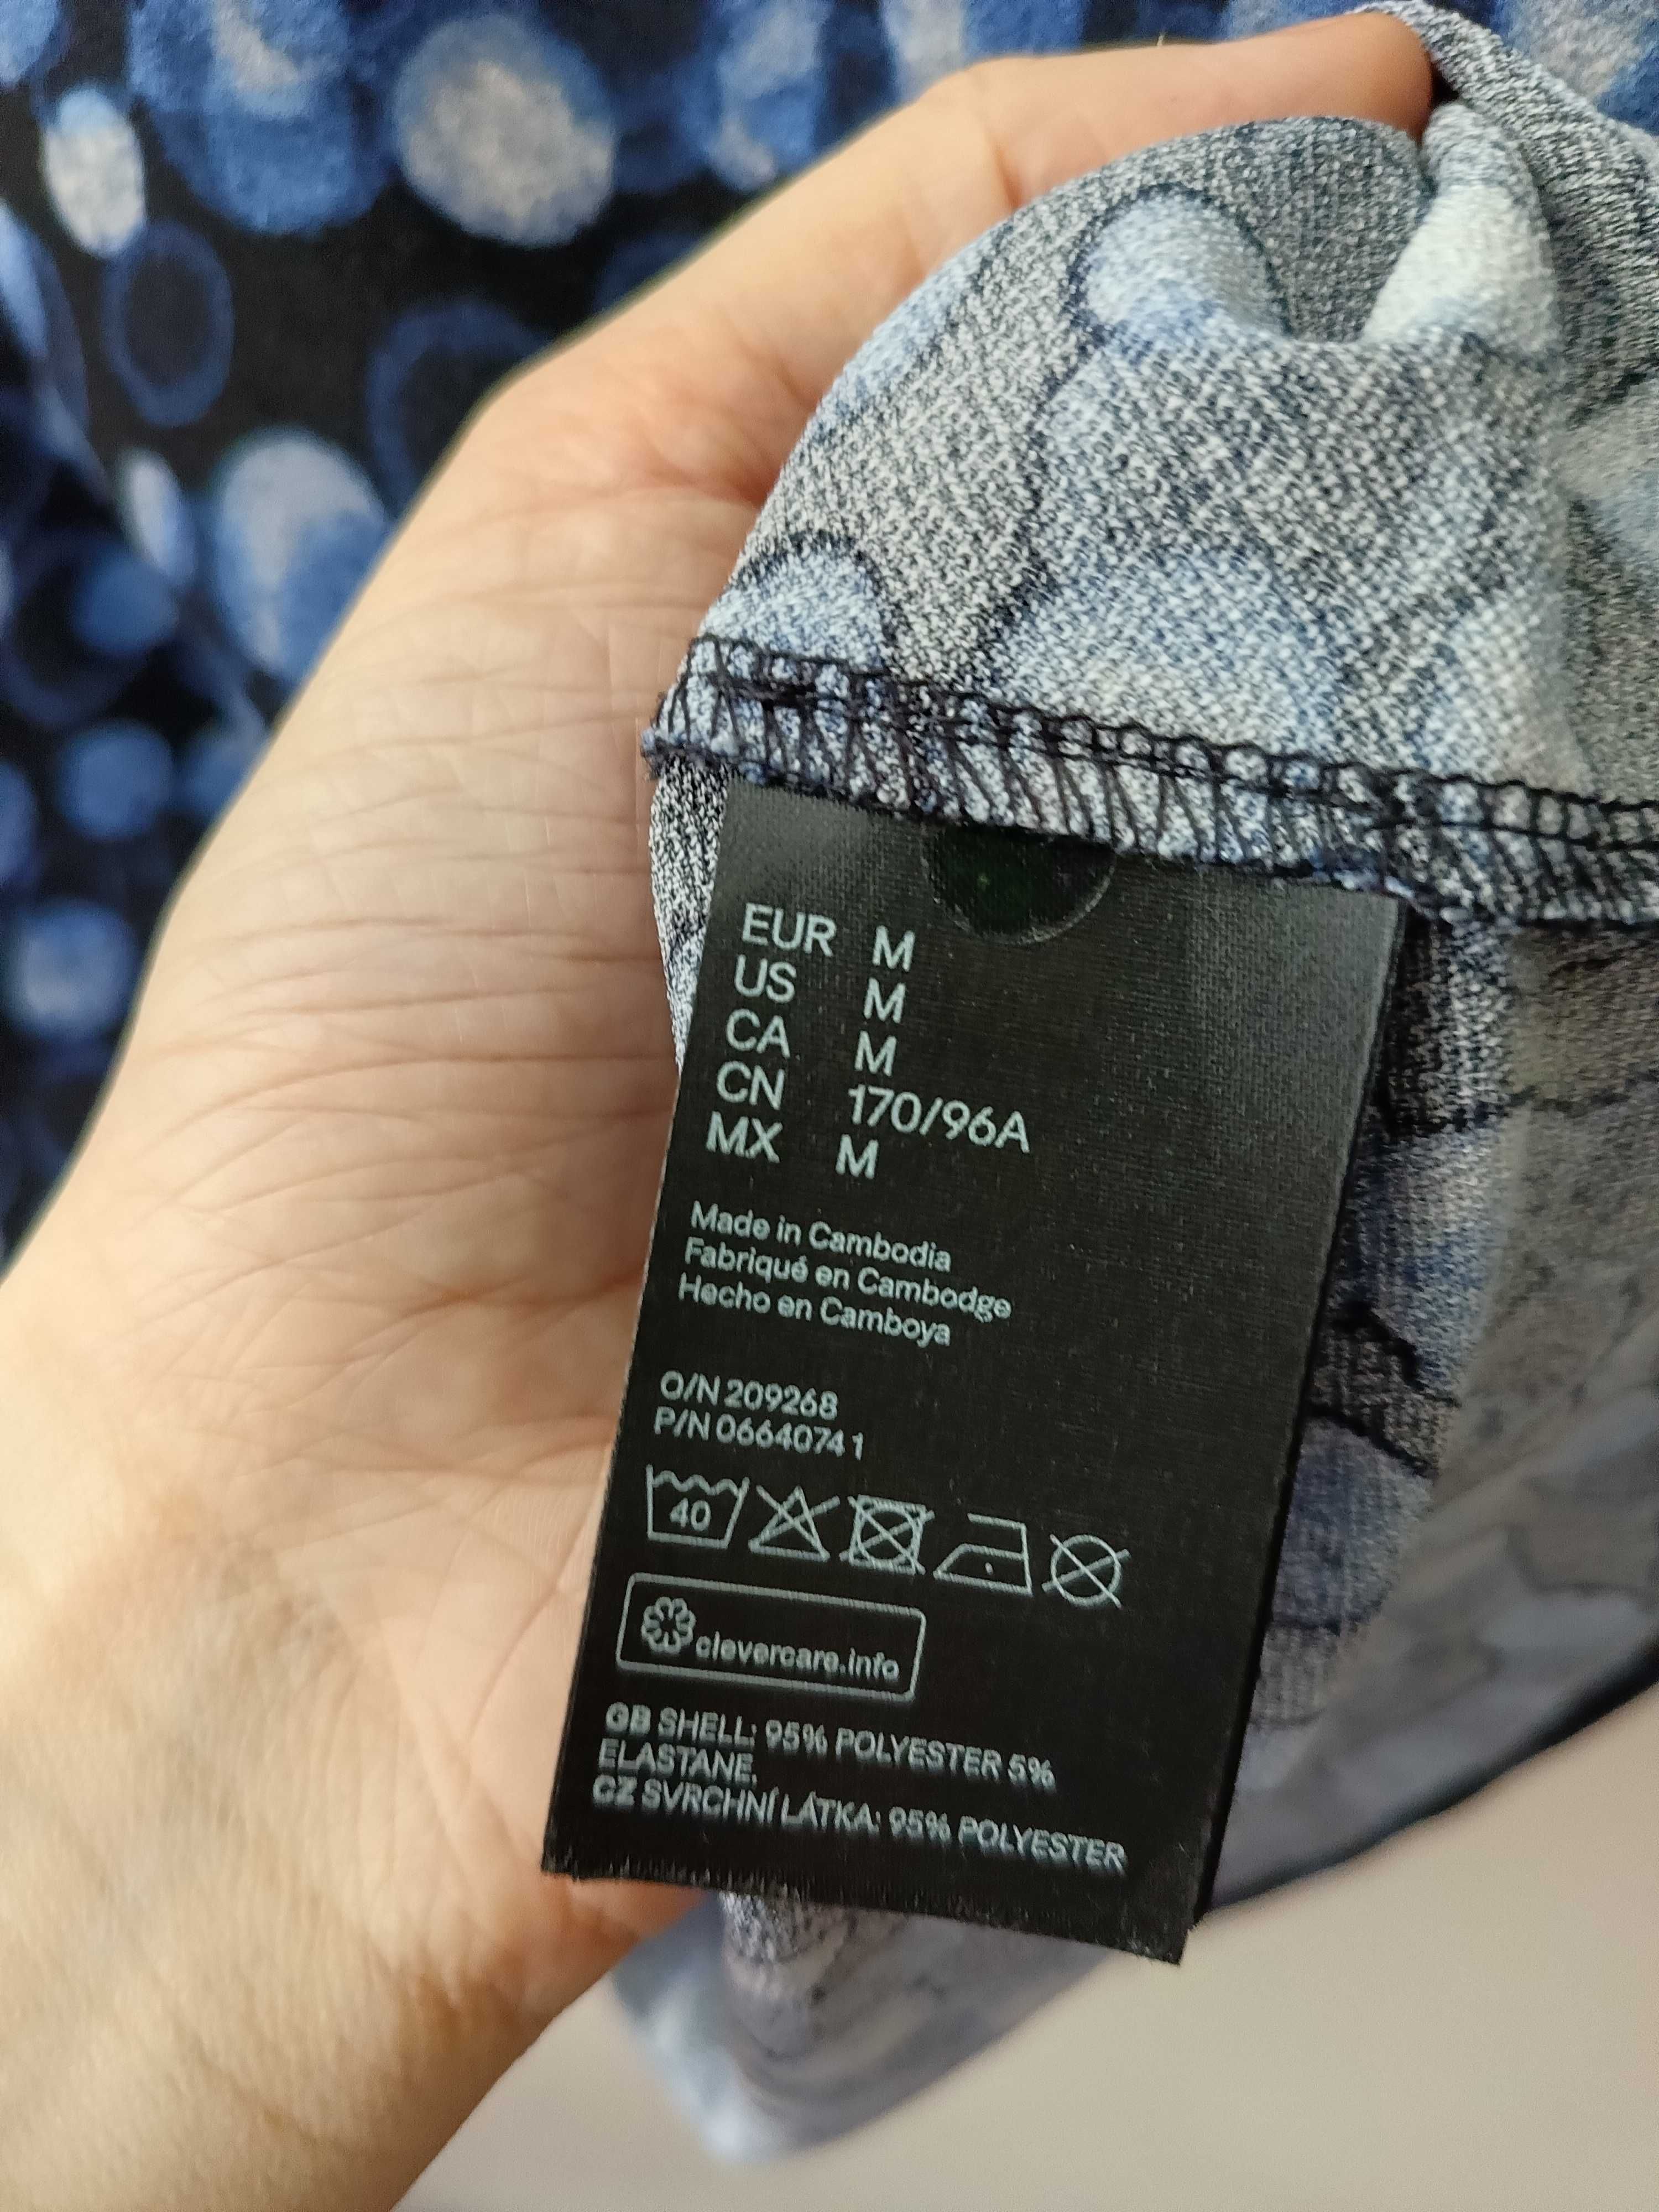 Czarno-niebieska bluzka H&M rozmiar 40/42